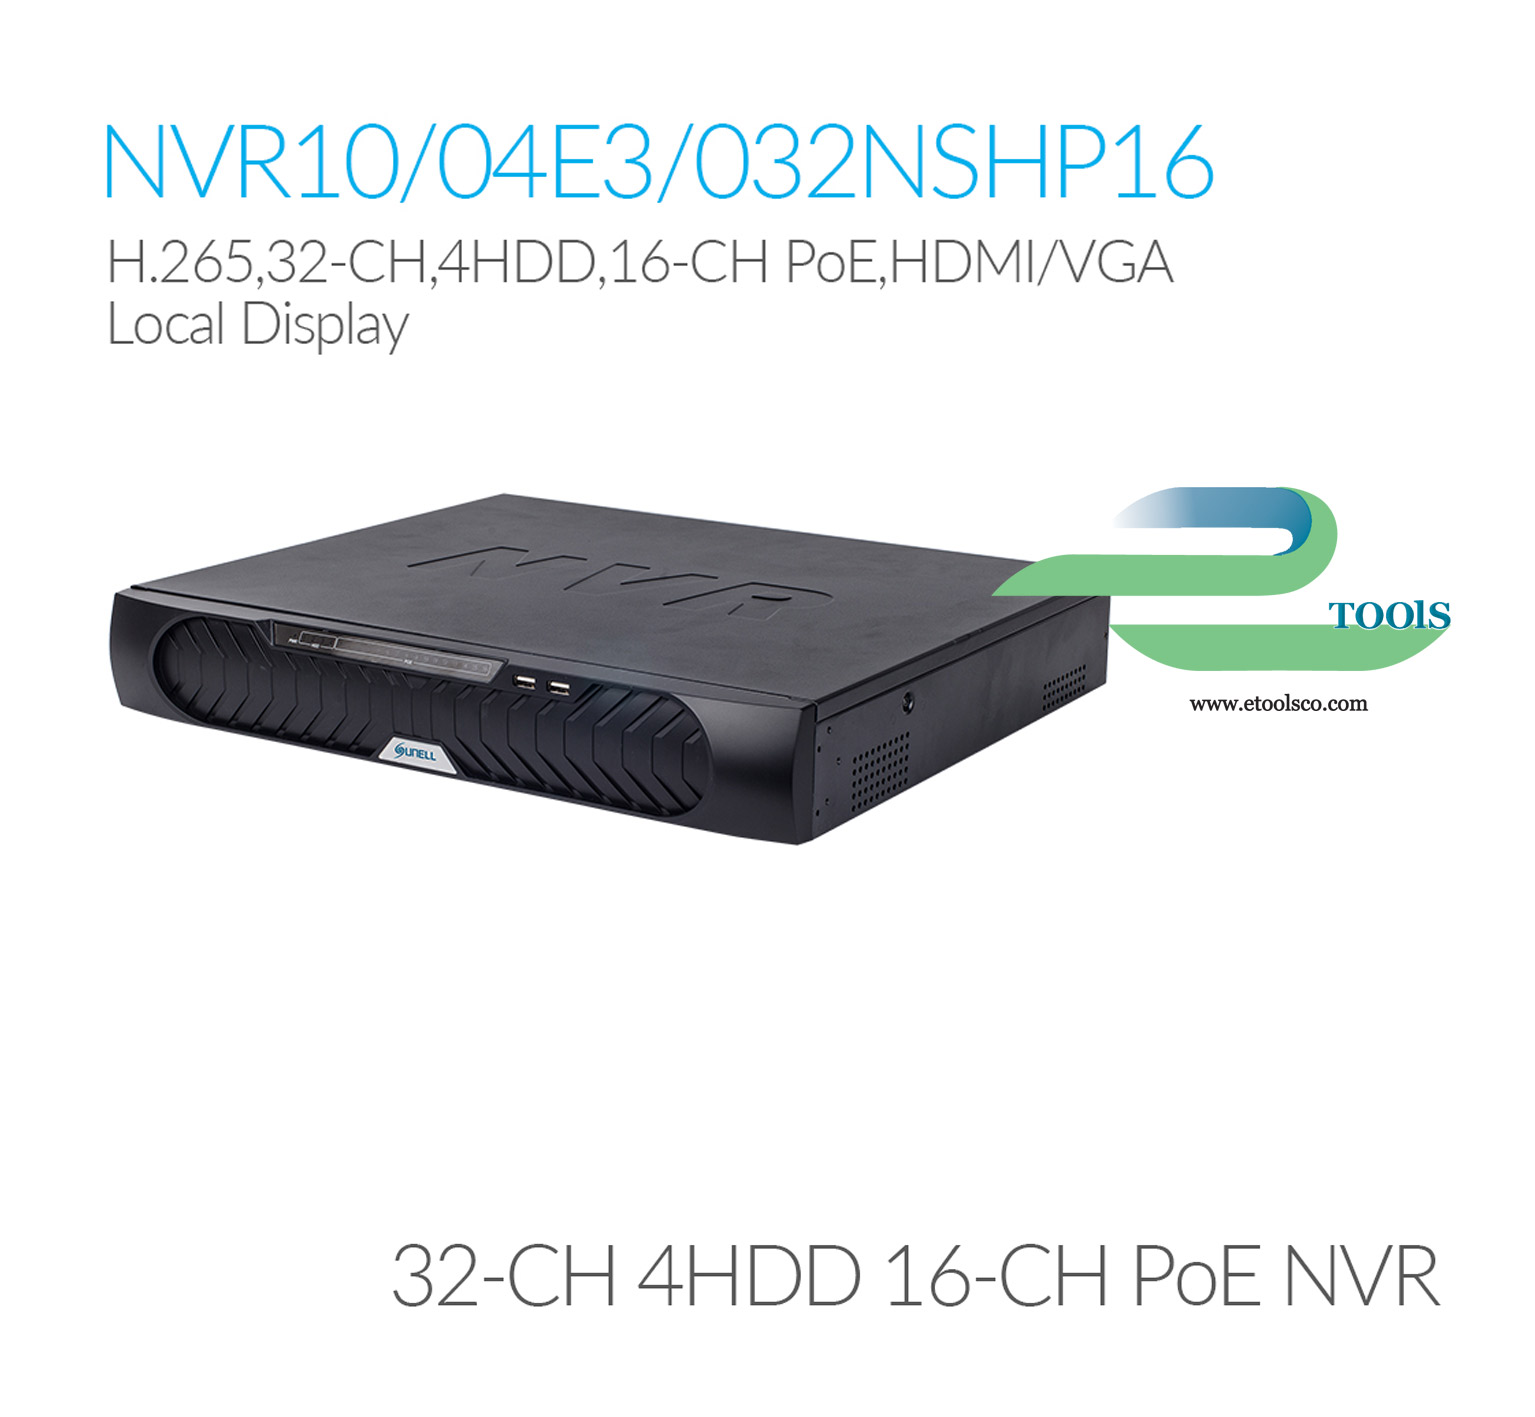 NVR سانل SN NVR10/04E3032NSHP16